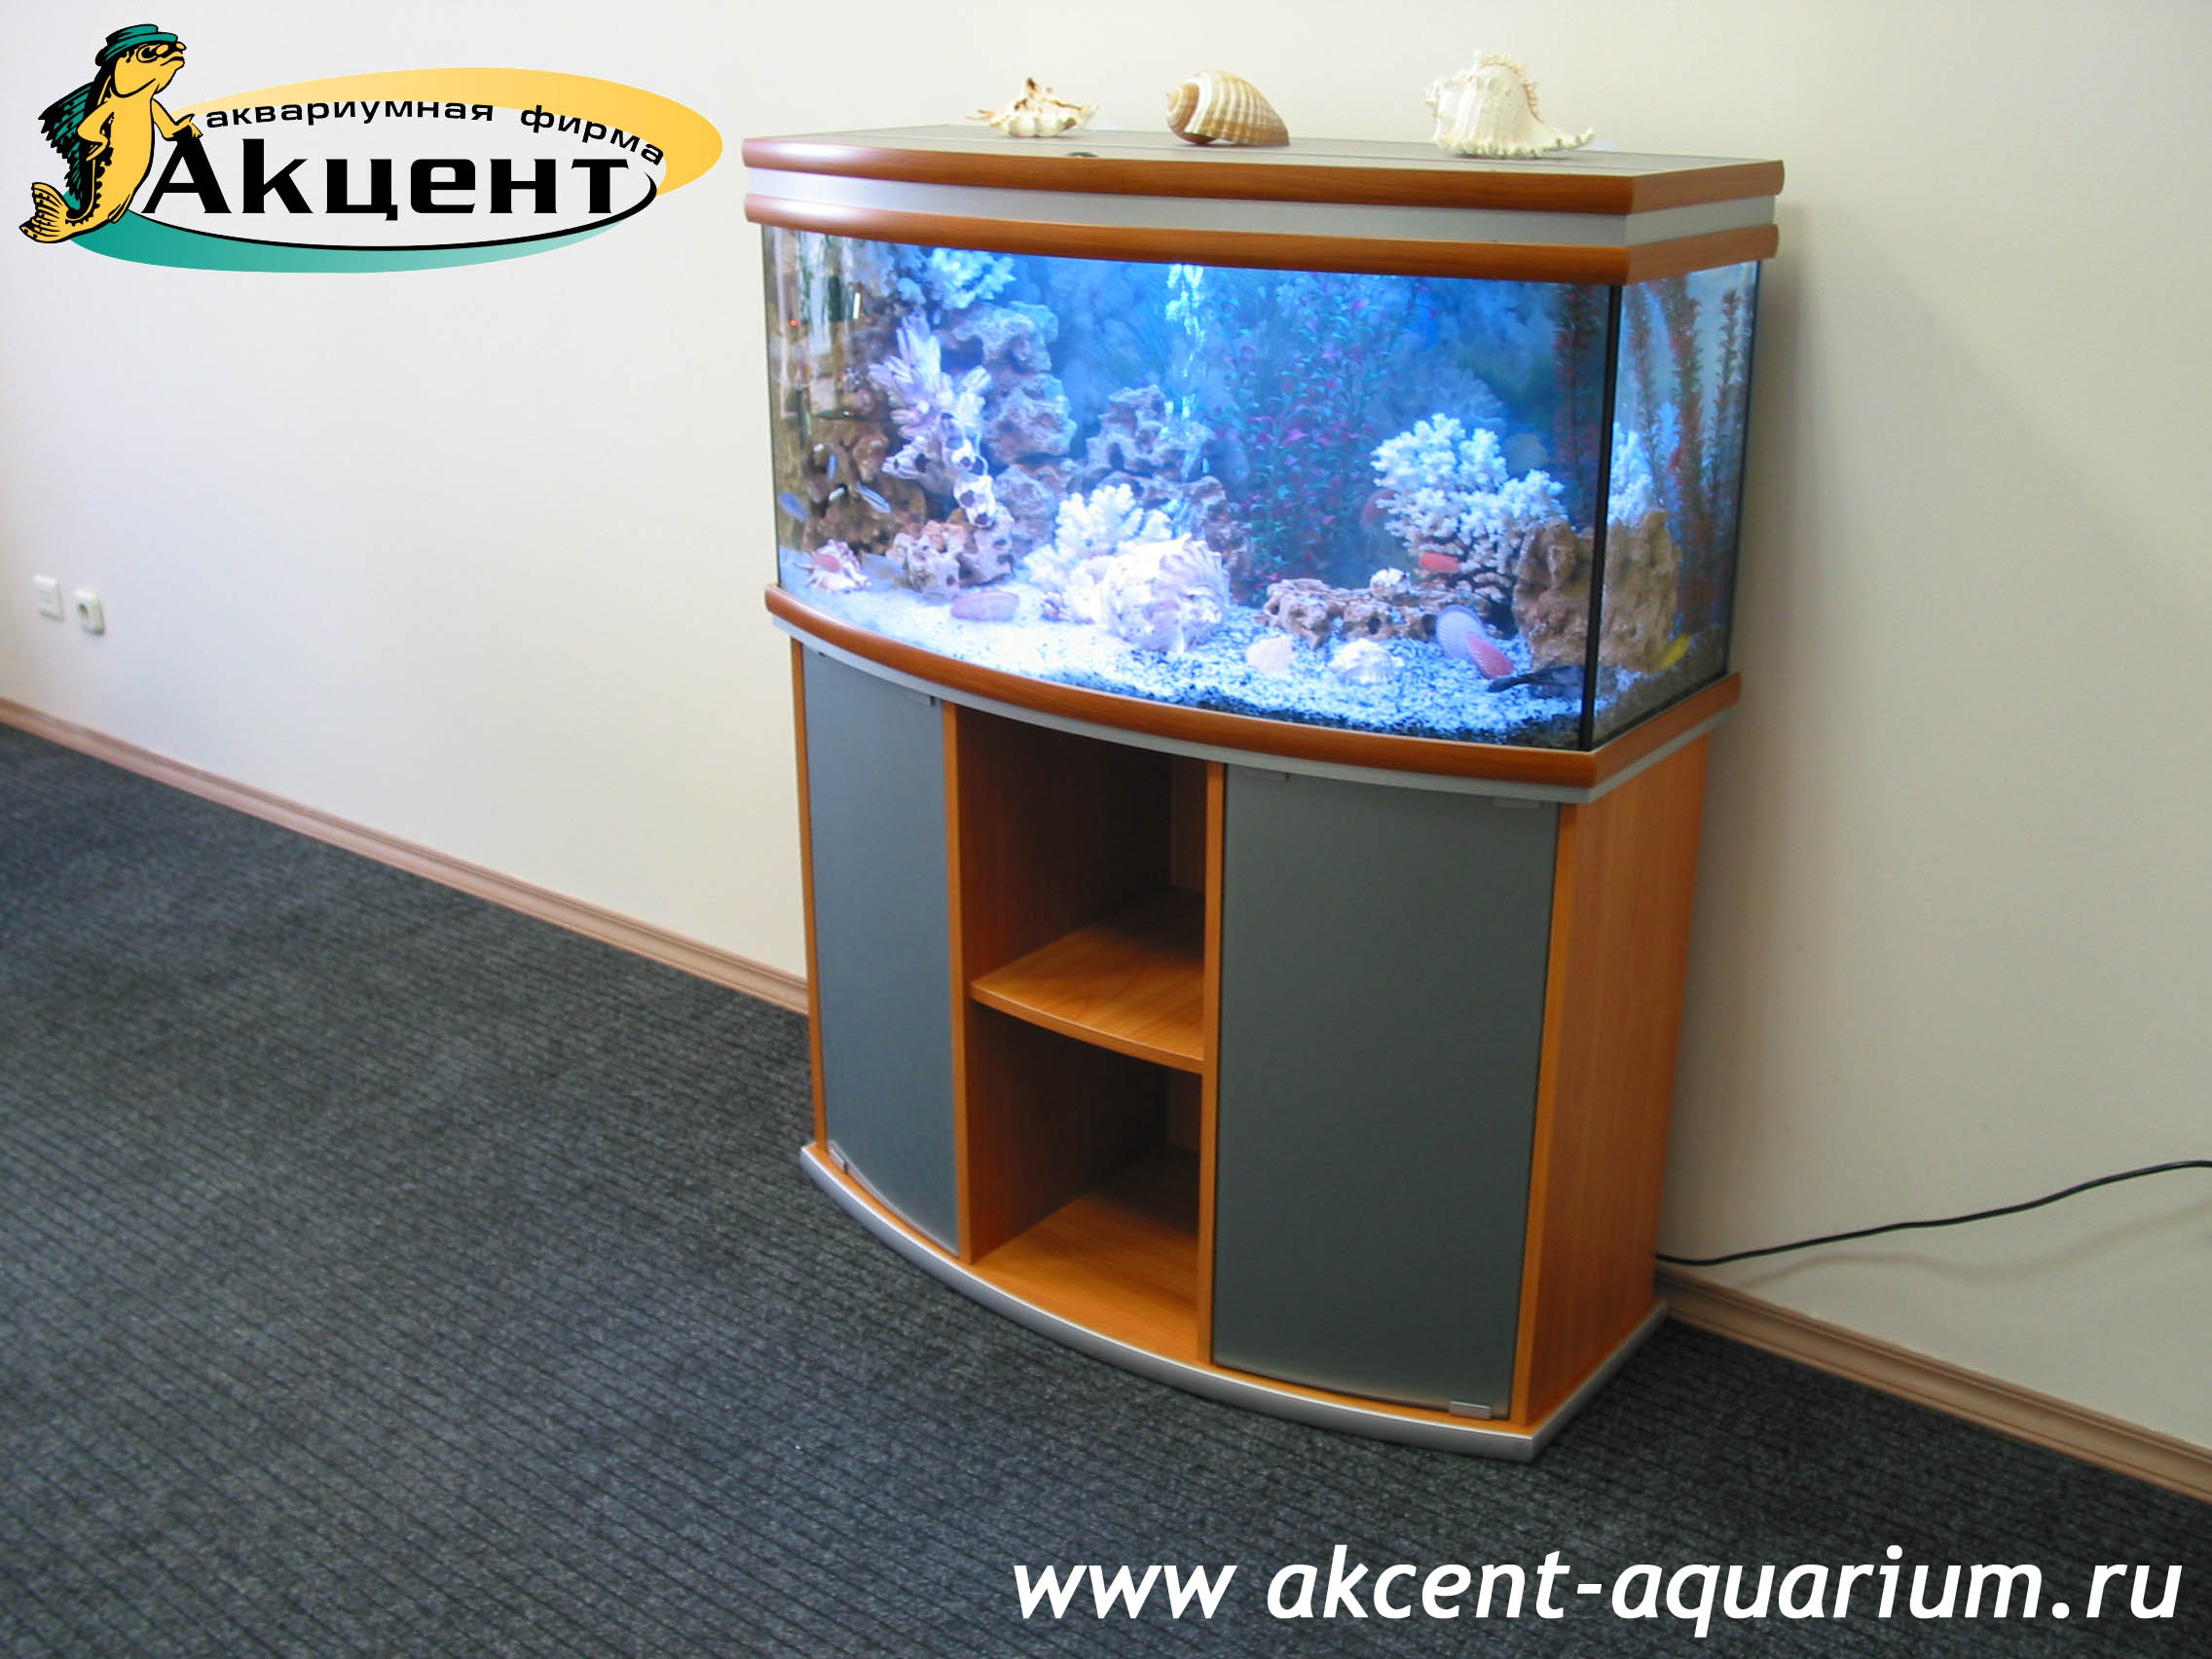 Акцент-аквариум, аквариум 160 литров, с гнутым передним стеклом офис